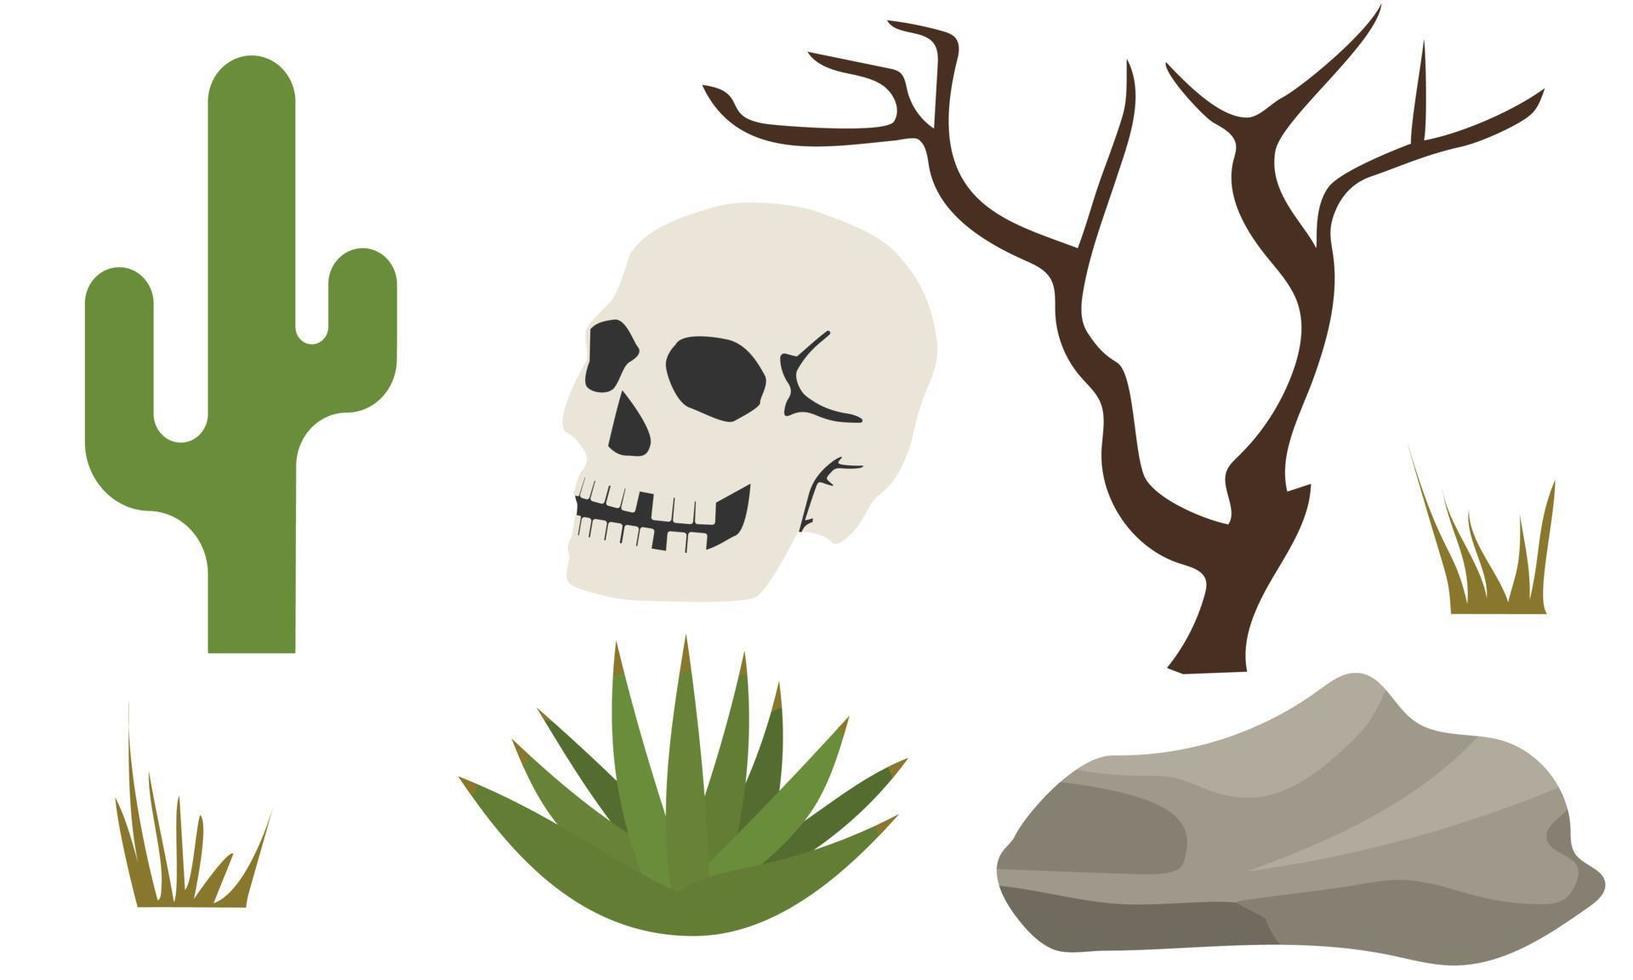 satz von elementen über wüste und tote. Schädel des Menschen, Kaktus, alter Baum, Stein, Aloe Vera. Vektor-Illustration. vektor